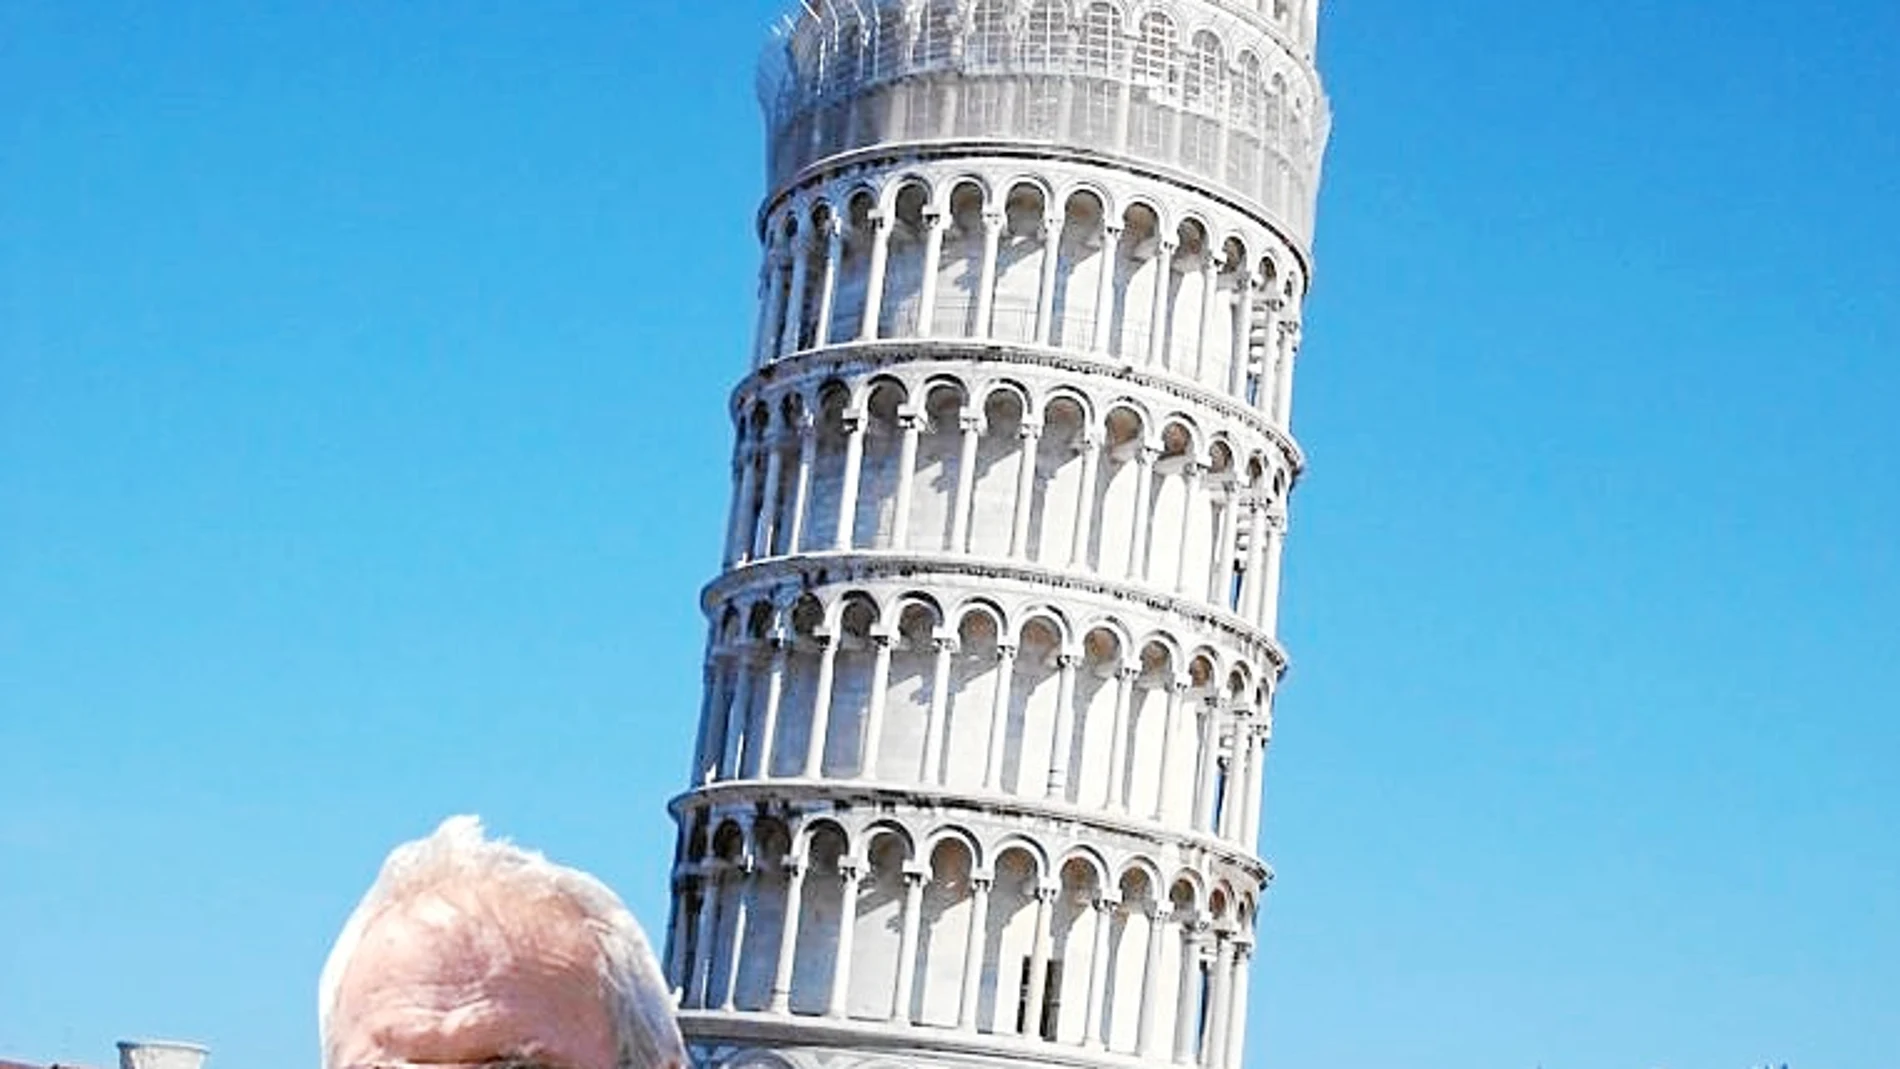 Imagen de la Torre de Pisa, usada para estudiar la generación de asociaciones mentales